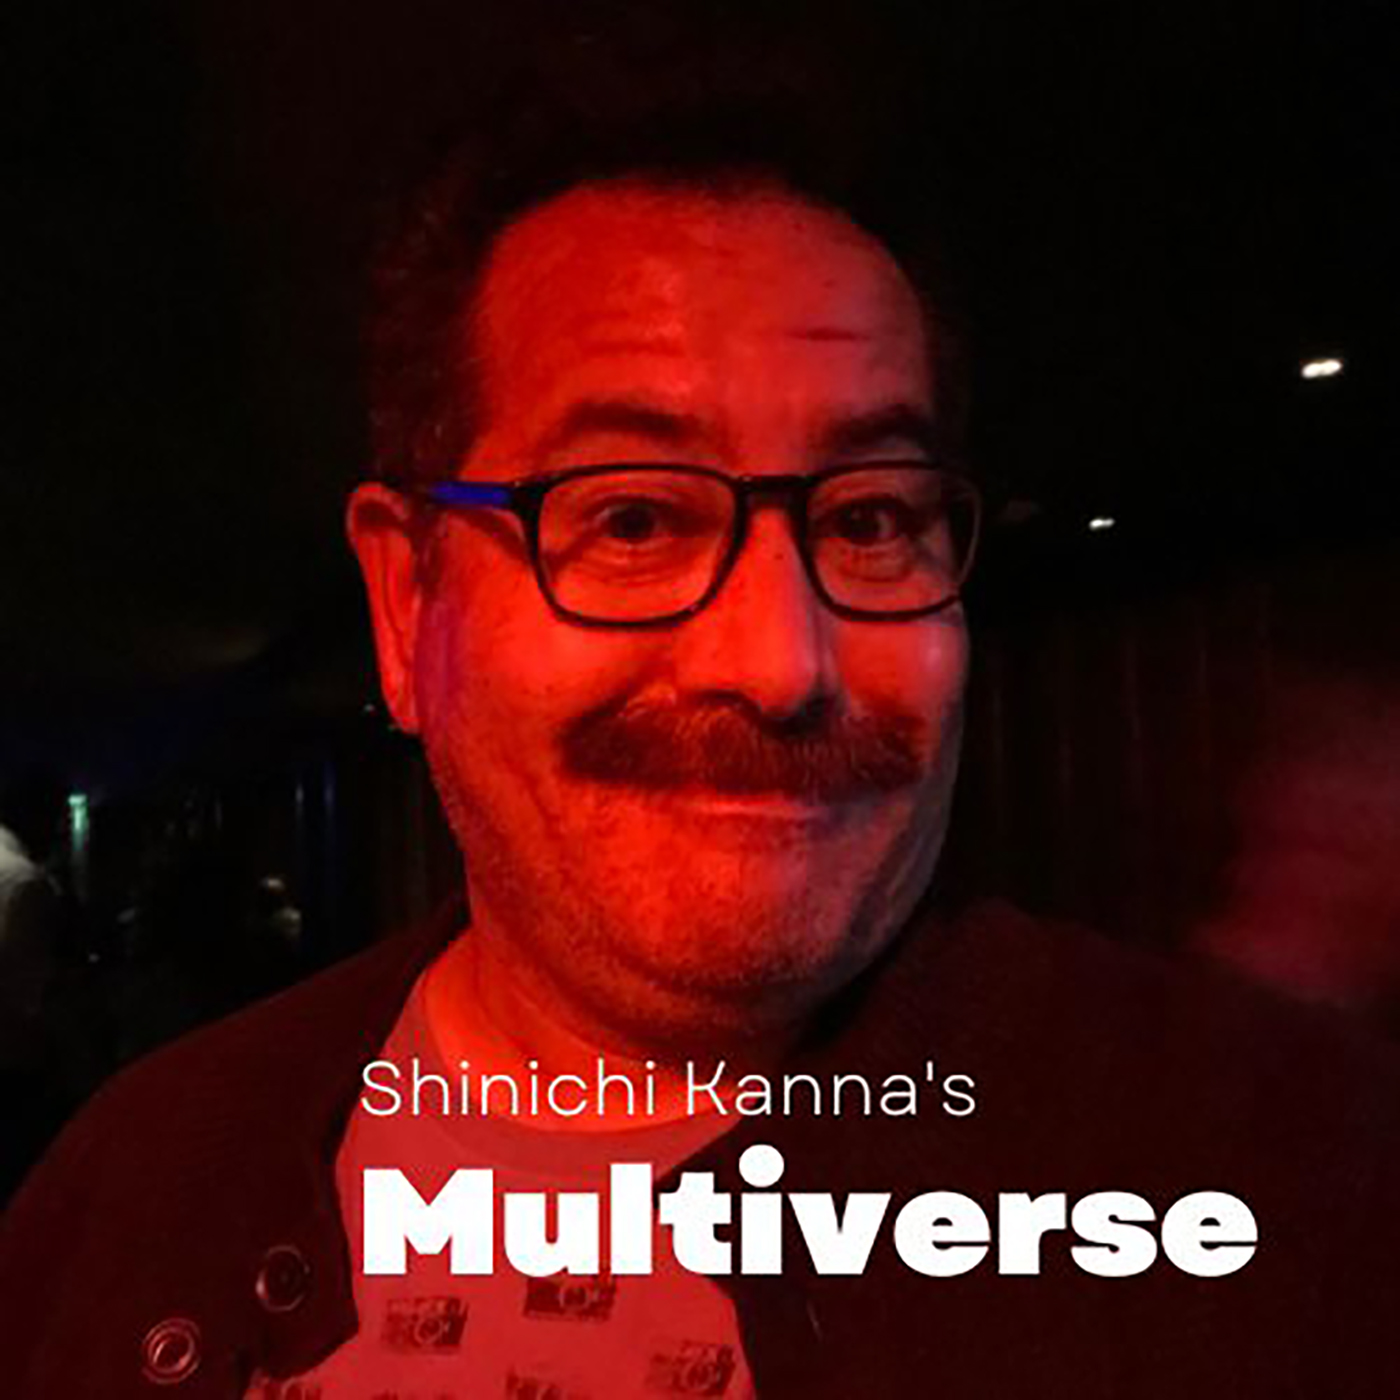 shinichi kanna's multiverse